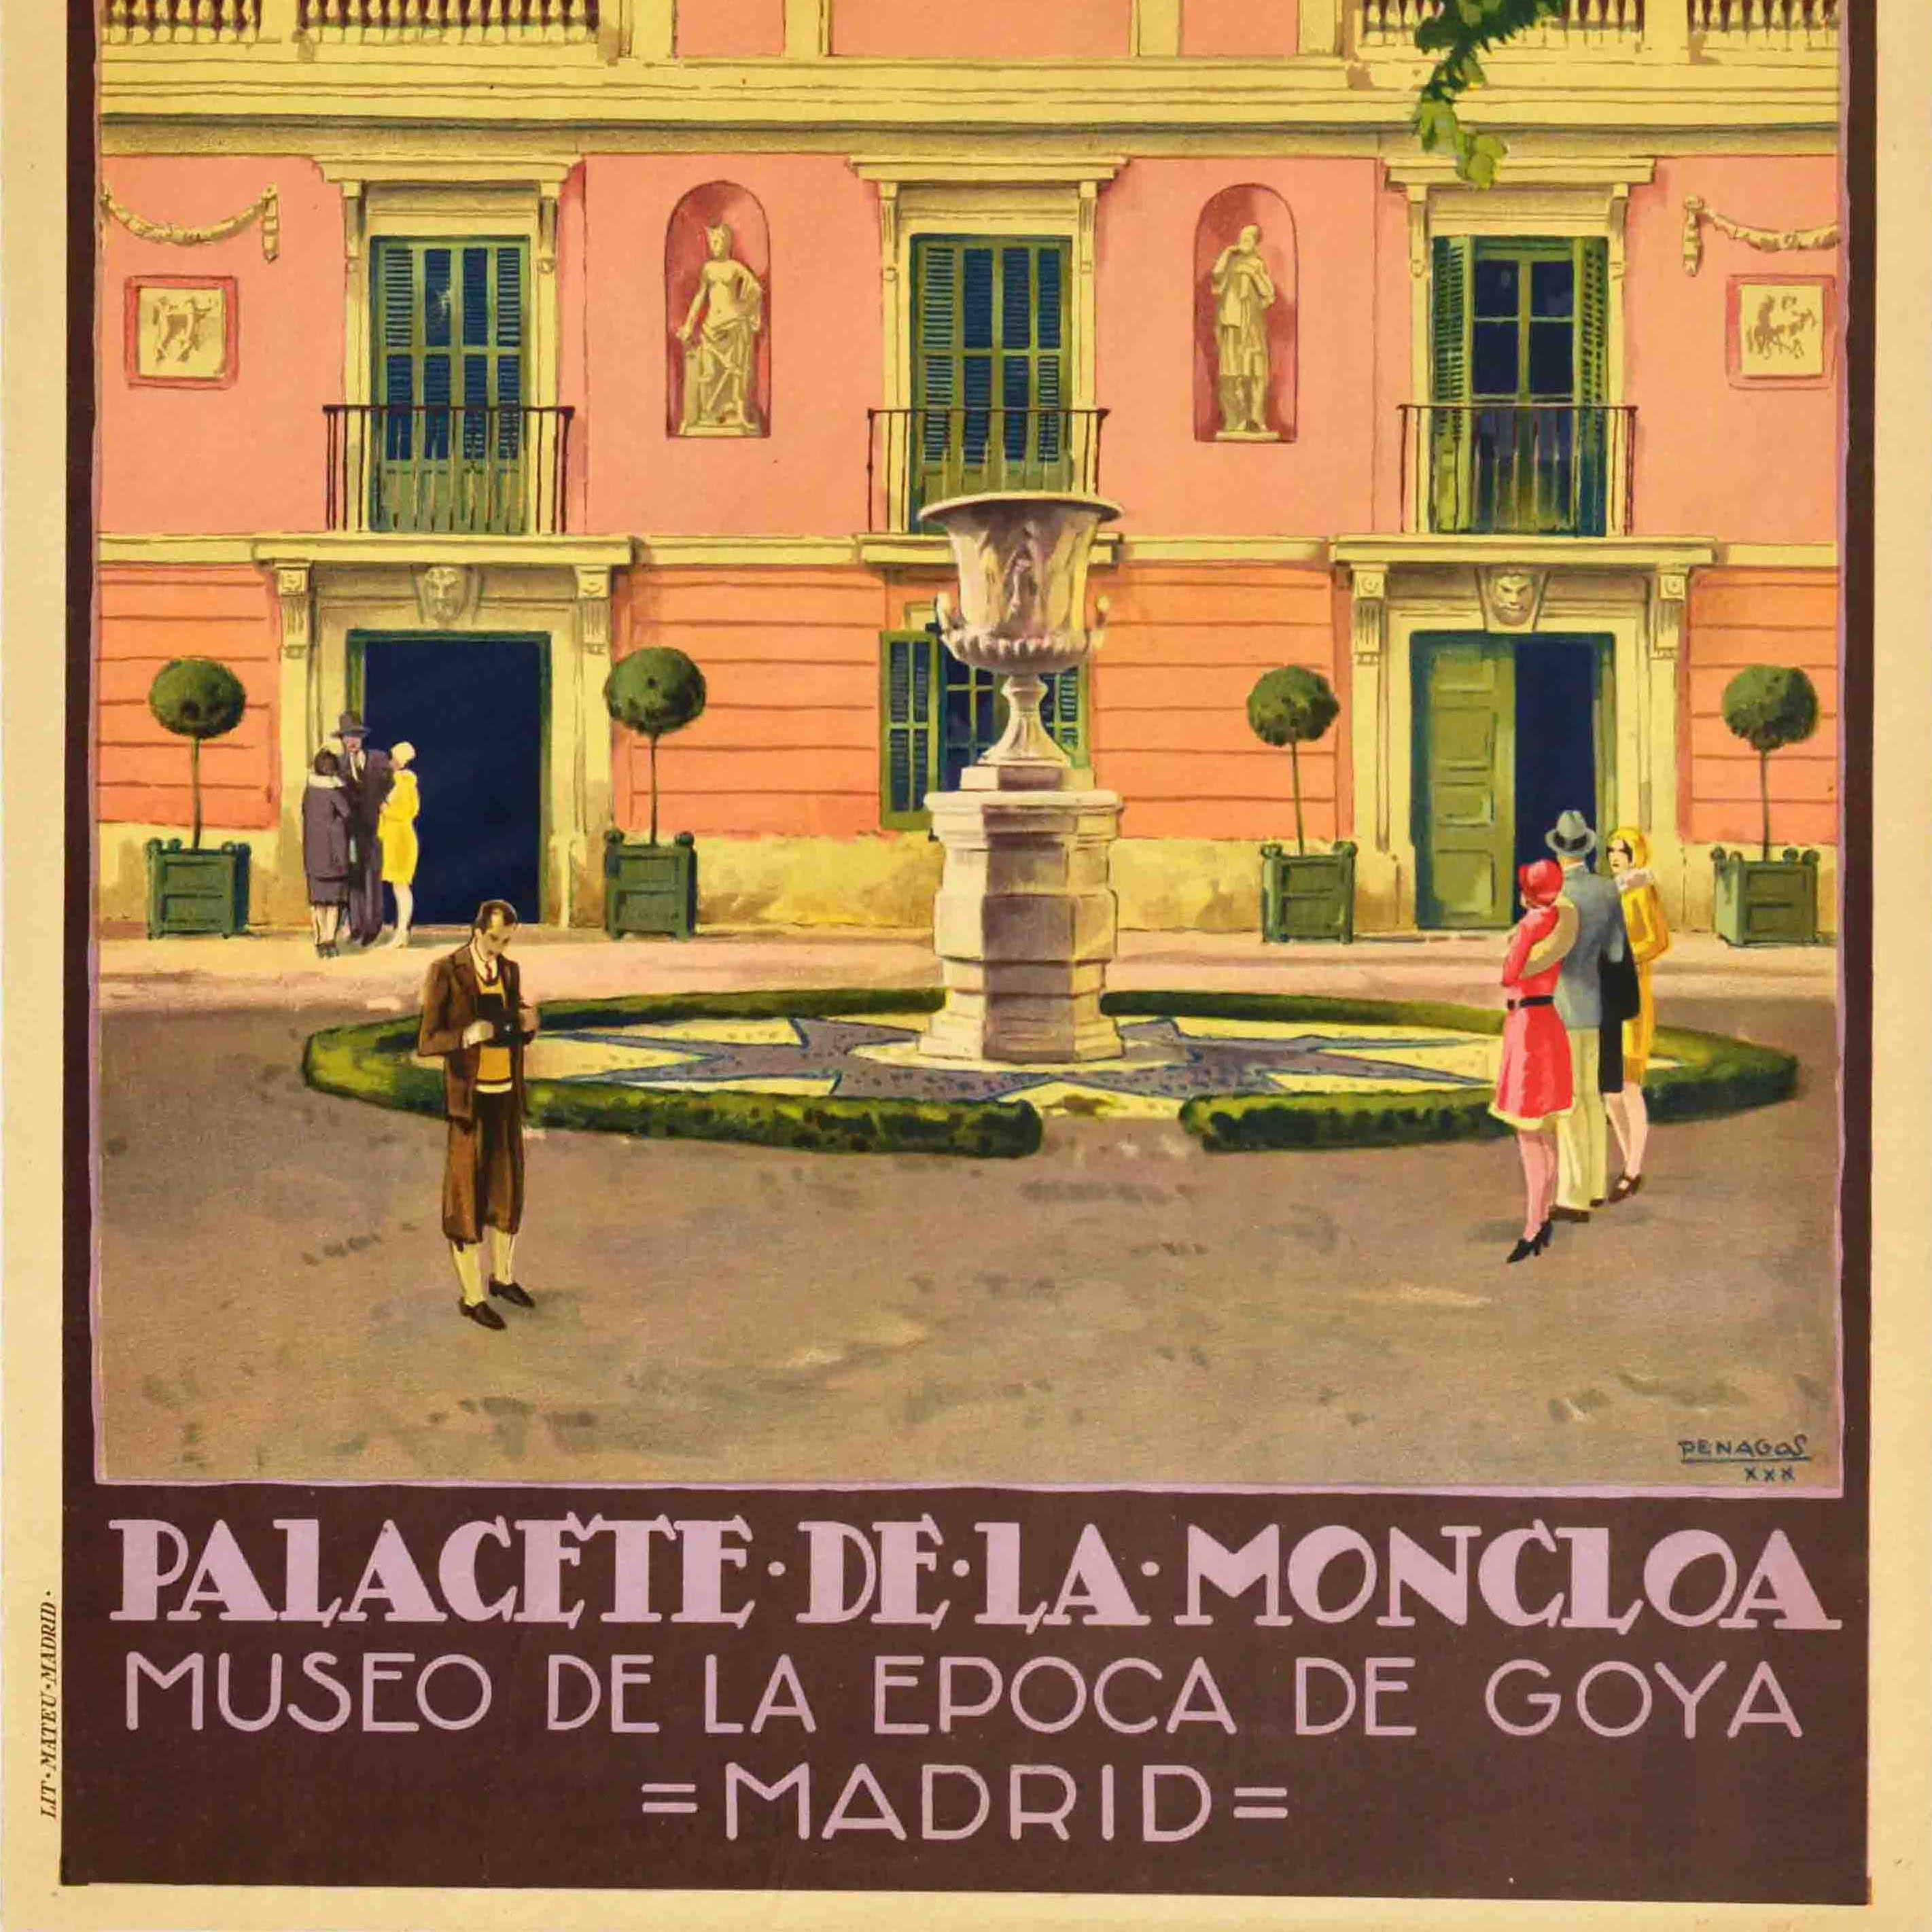 madrid travel poster